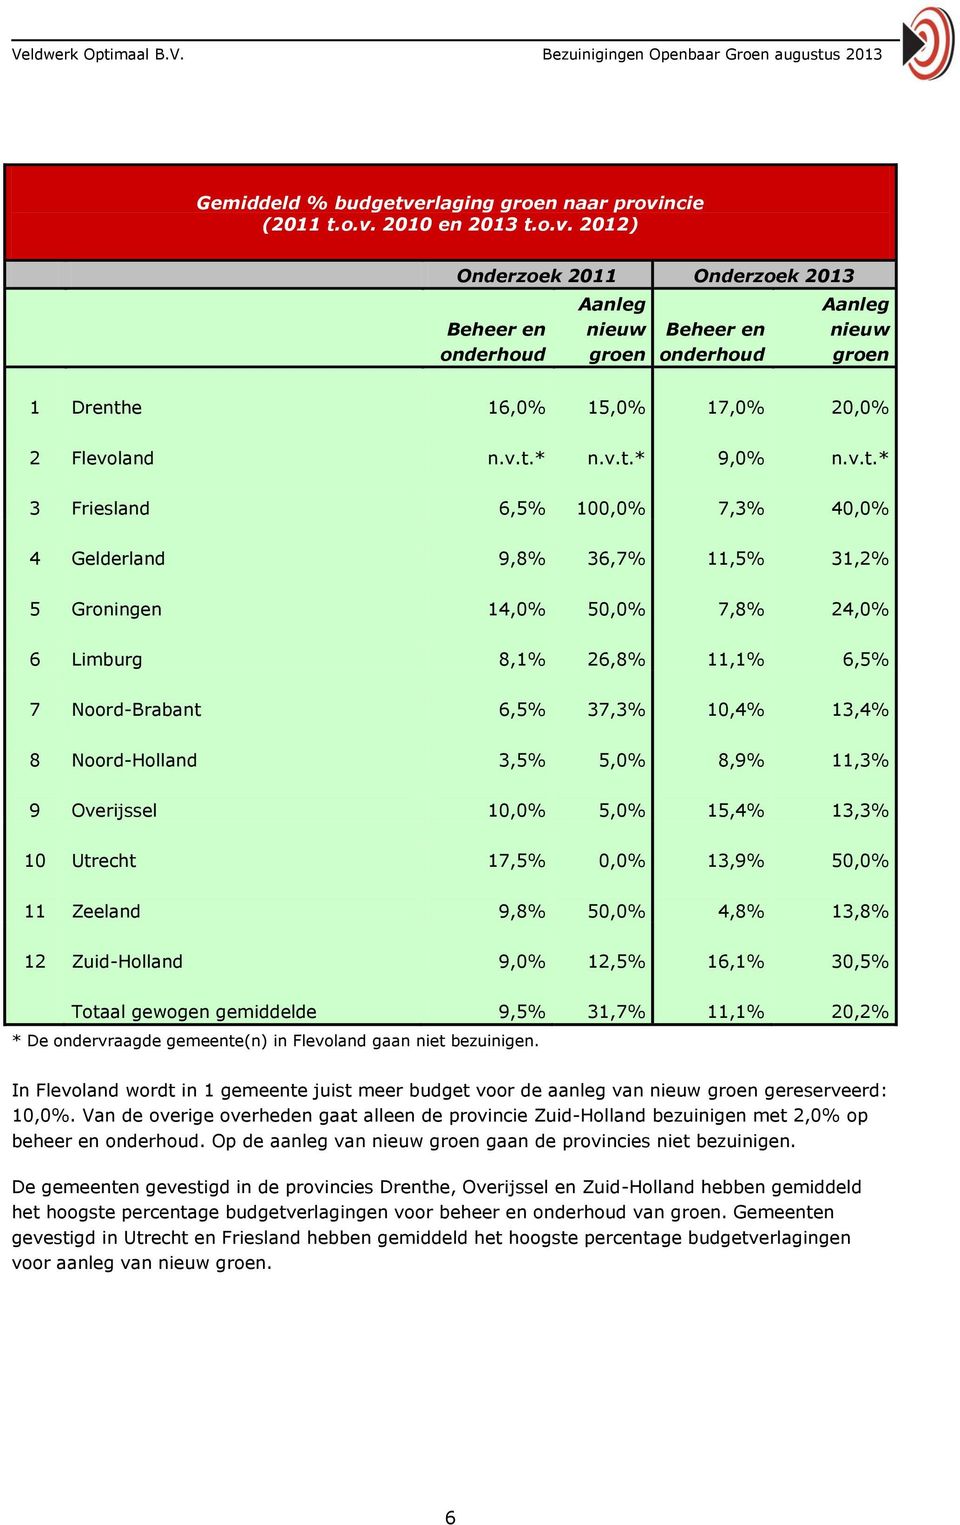 13,4% 8 Noord-Holland 3,5% 5,0% 8,9% 11,3% 9 Overijssel 10,0% 5,0% 15,4% 13,3% 10 Utrecht 17,5% 0,0% 13,9% 50,0% 11 Zeeland 9,8% 50,0% 4,8% 13,8% 12 Zuid-Holland 9,0% 12,5% 16,1% 30,5% Totaal gewogen